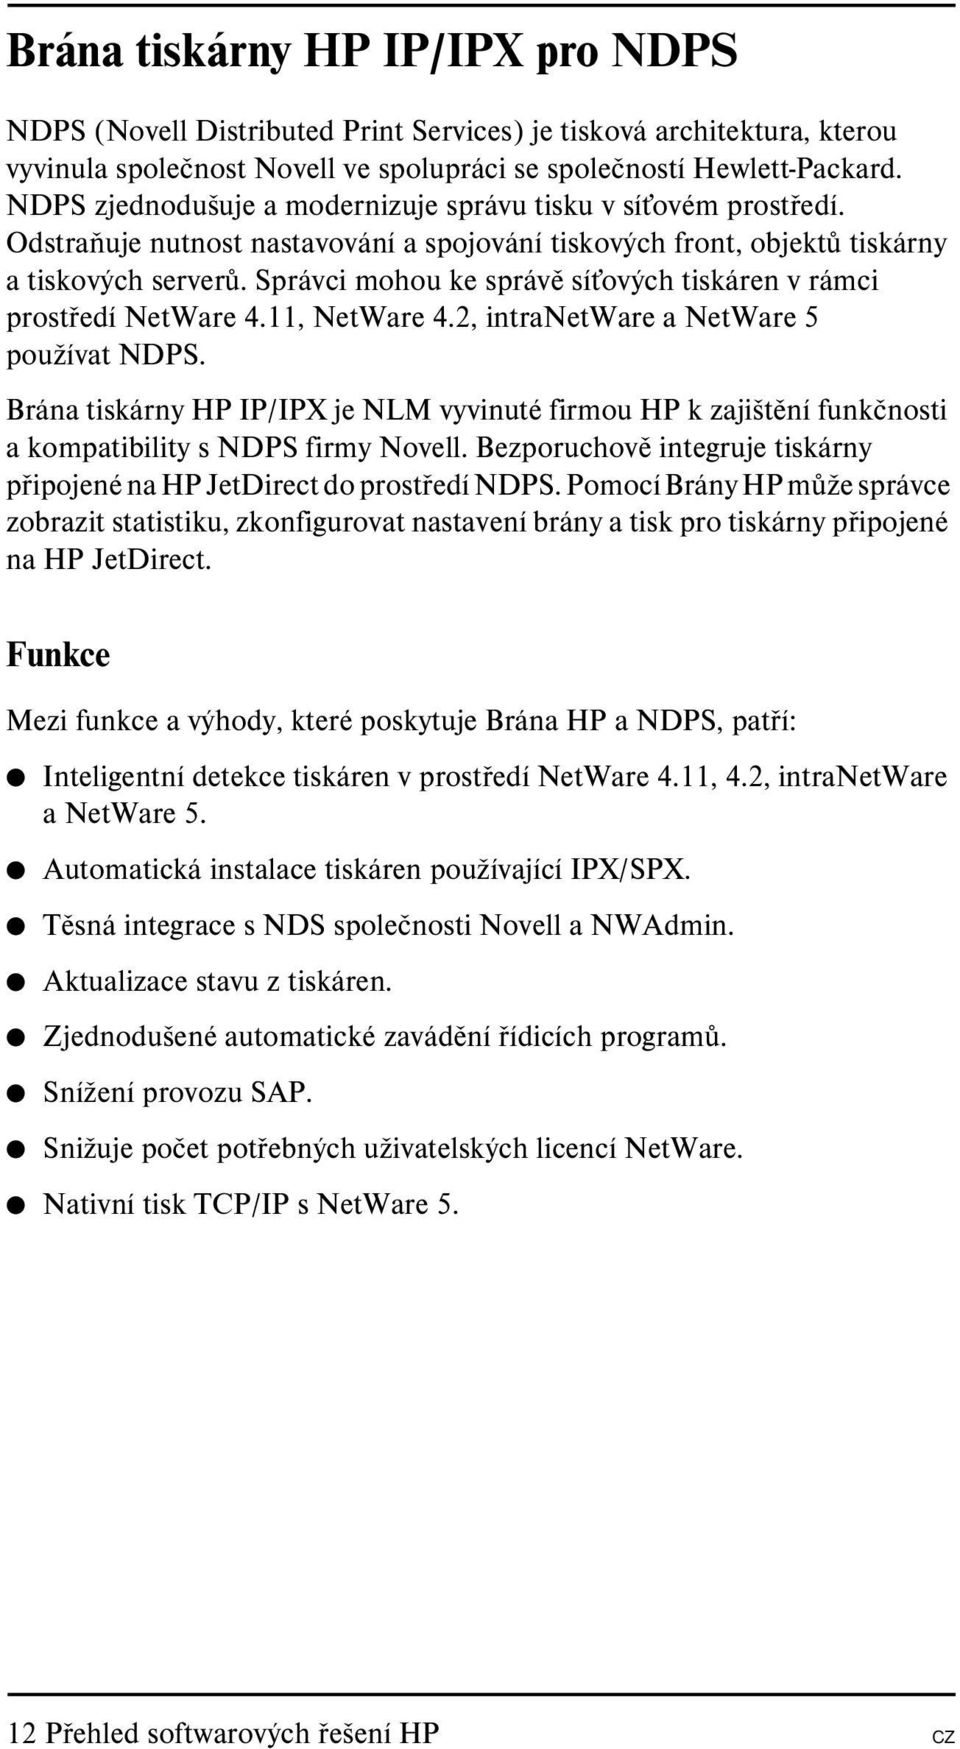 Správci mohou ke správě sít ových tiskáren v rámci prostředí NetWare 4.11, NetWare 4.2, intranetware a NetWare 5 používat NDPS.